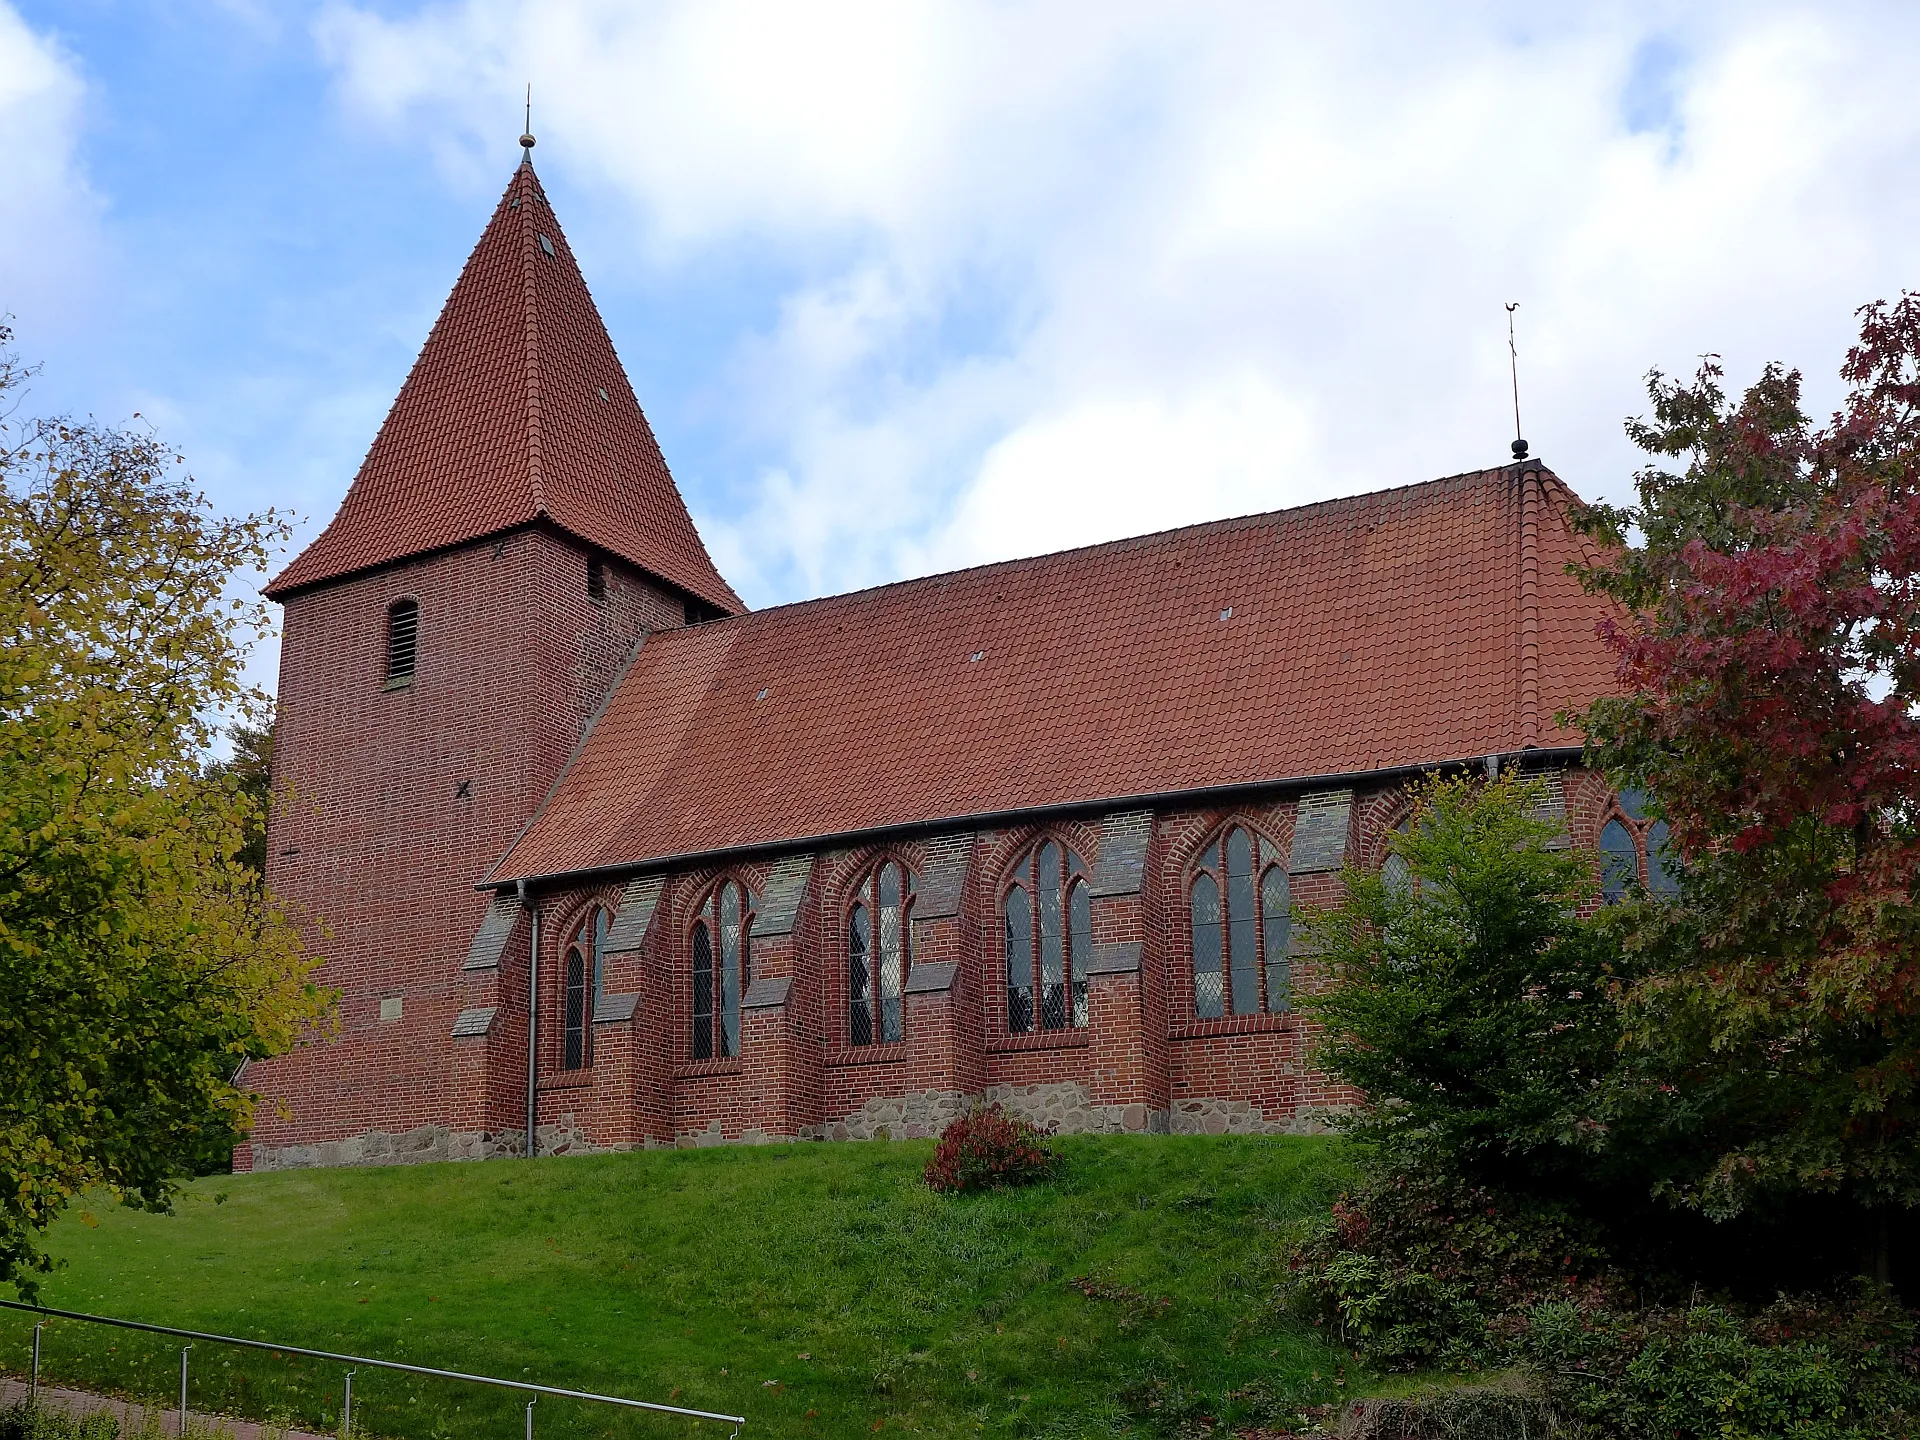 Photo showing: St.-Martins-Kirche in Soderstorf-Raven. Erstmals erwähnt um 1250. Grundmauerreste einer rechteckigen Feldsteinkirche aus der Zeit um 1200. Das heutige Gotteshaus im gotischen Backsteinstil wurde zwischen 1400 und 1425 erbaut. Der Turm wird auf das Jahr 1600 datiert.